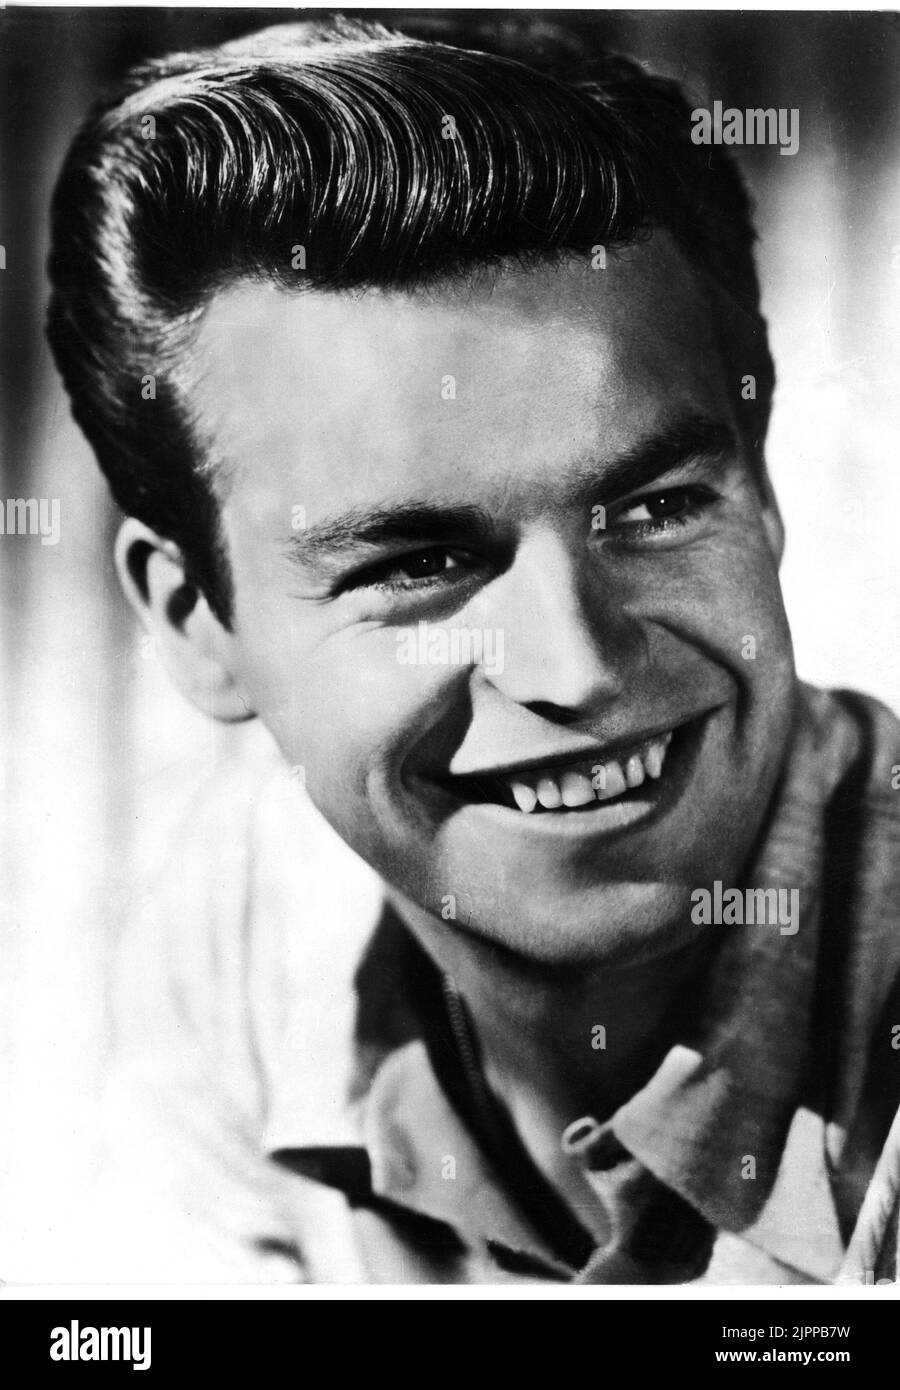 1952 environ : L'acteur Robert WAGNER ( né le 10 février 1930 à detroit , Michigan ) , 20th siècle Fox pubblicity STILL - CINÉMA - sourire - sorriso - adolescents idole ---- Archivio GBB Banque D'Images